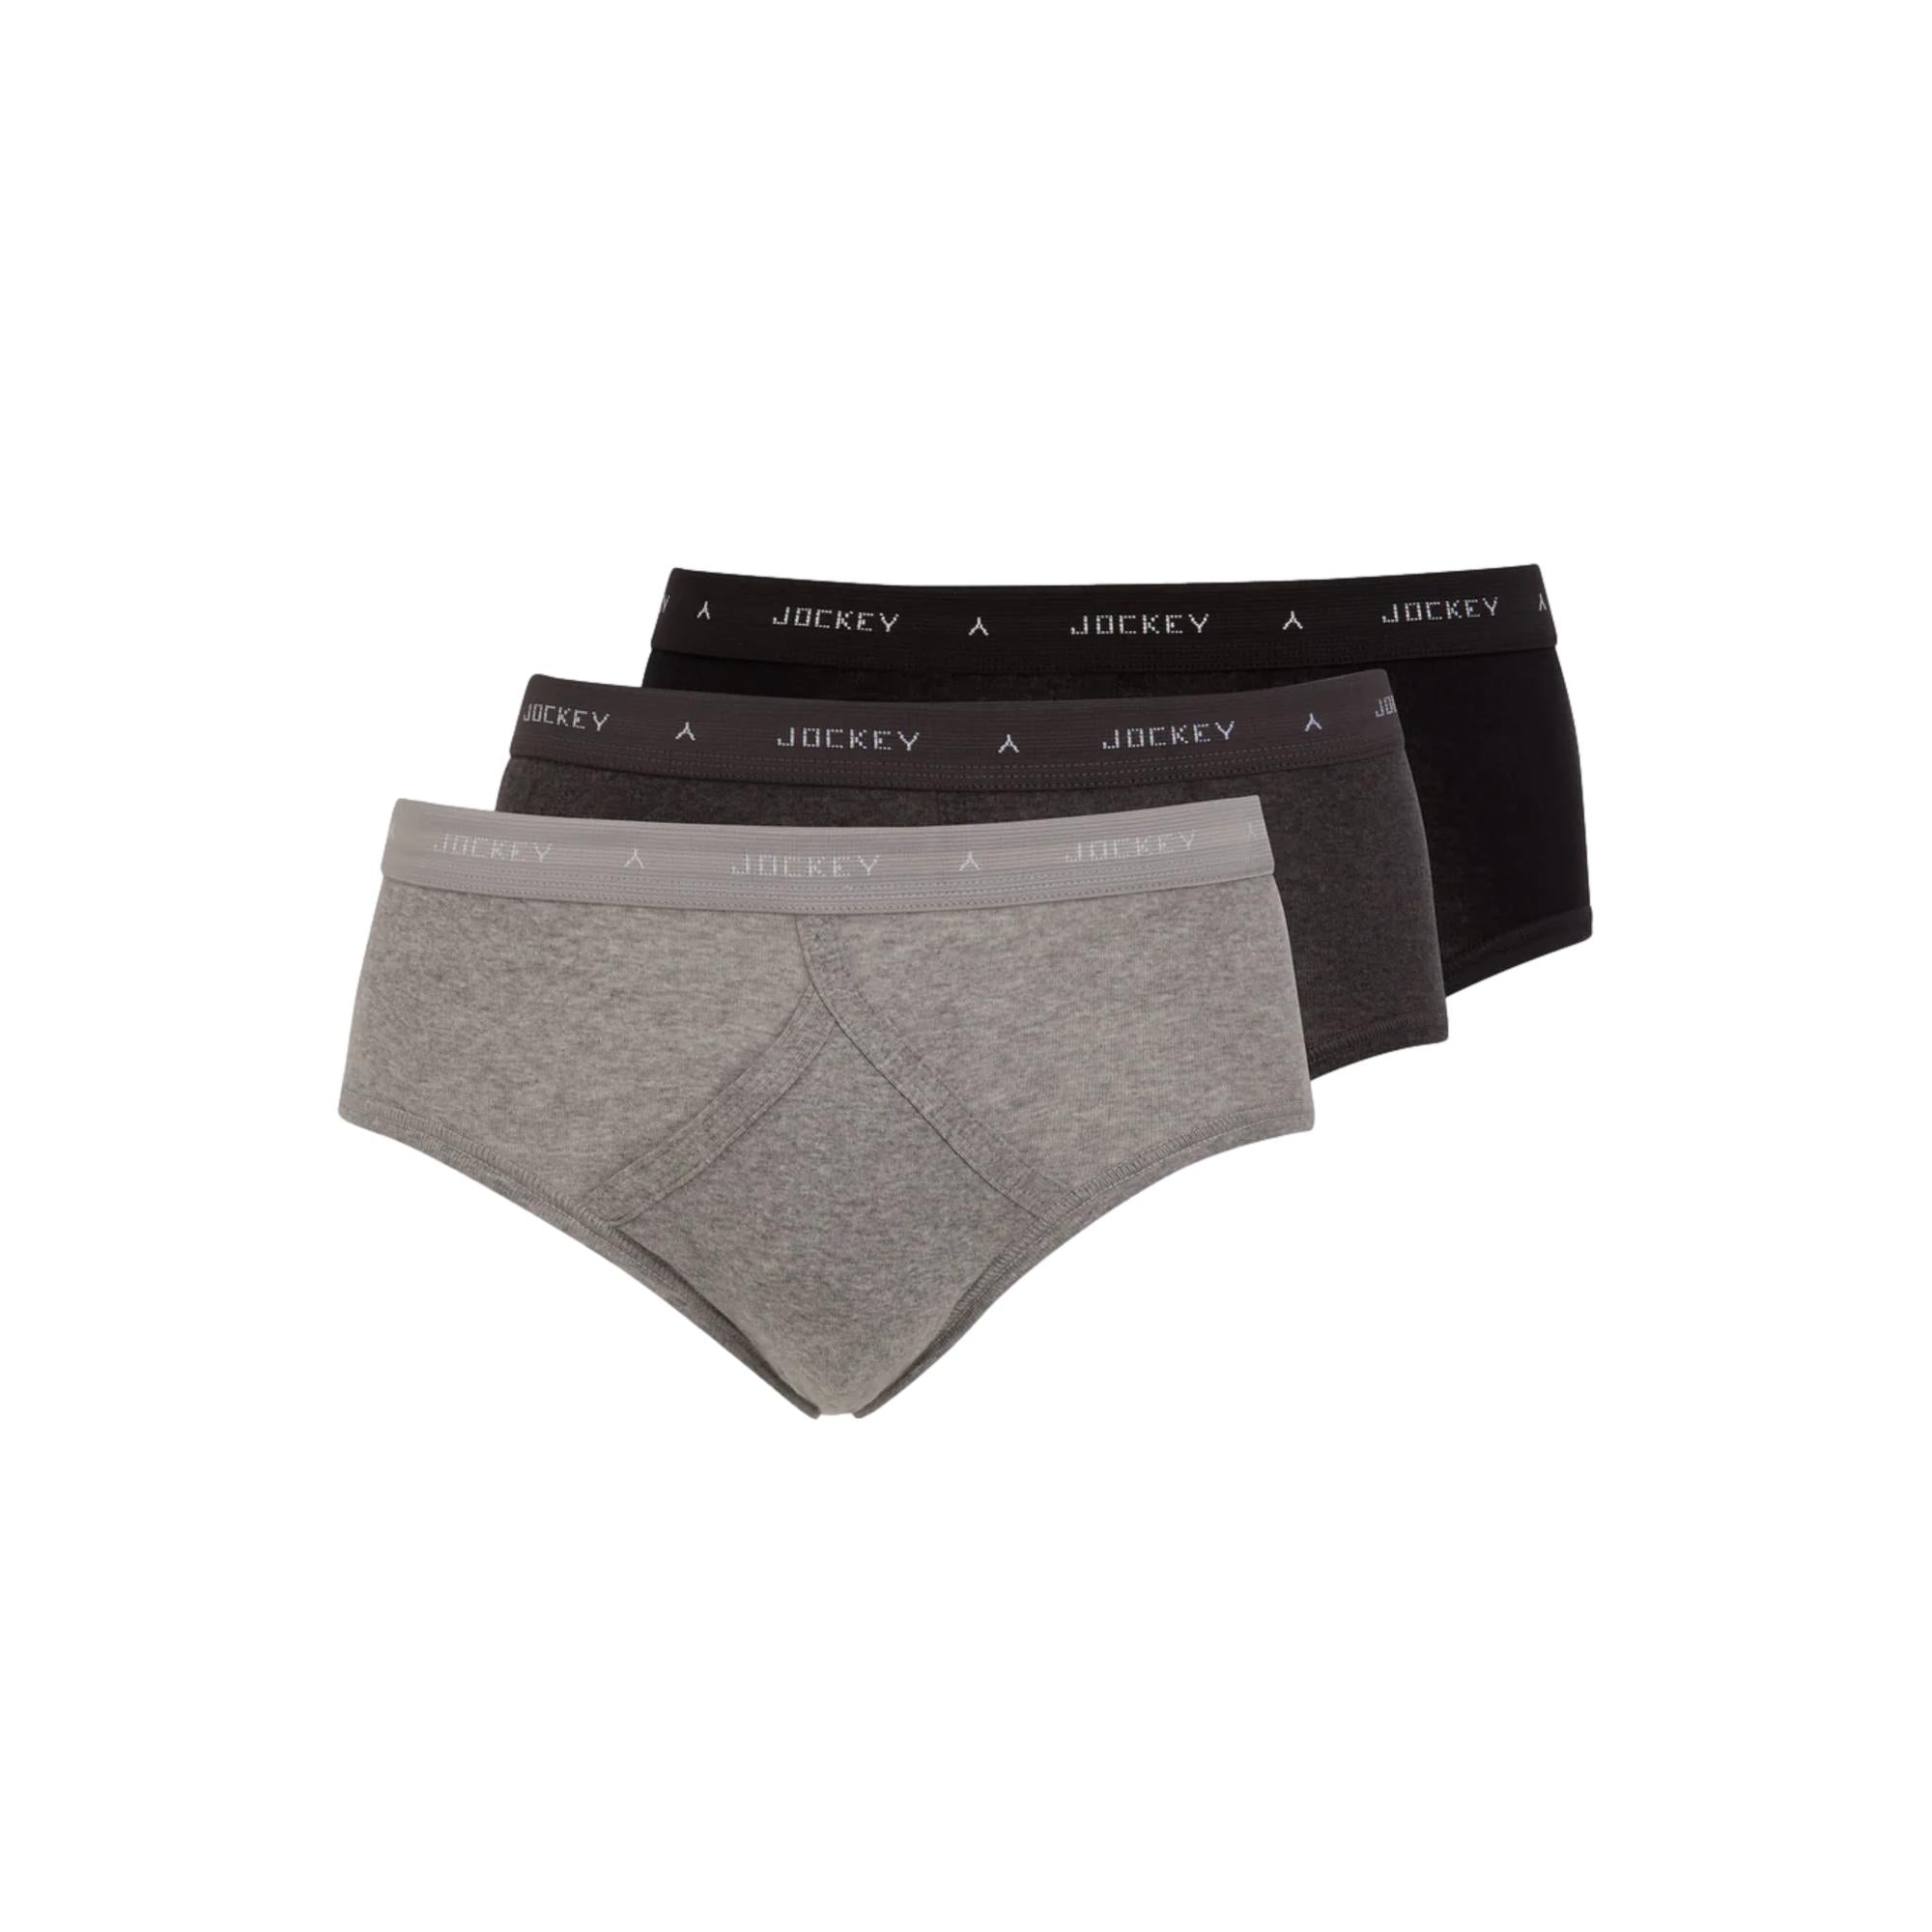 18.75% OFF on JOCKEY UNDERWEAR Underwear Cotton stretch KU 1046 Breif Grey  PACK 2